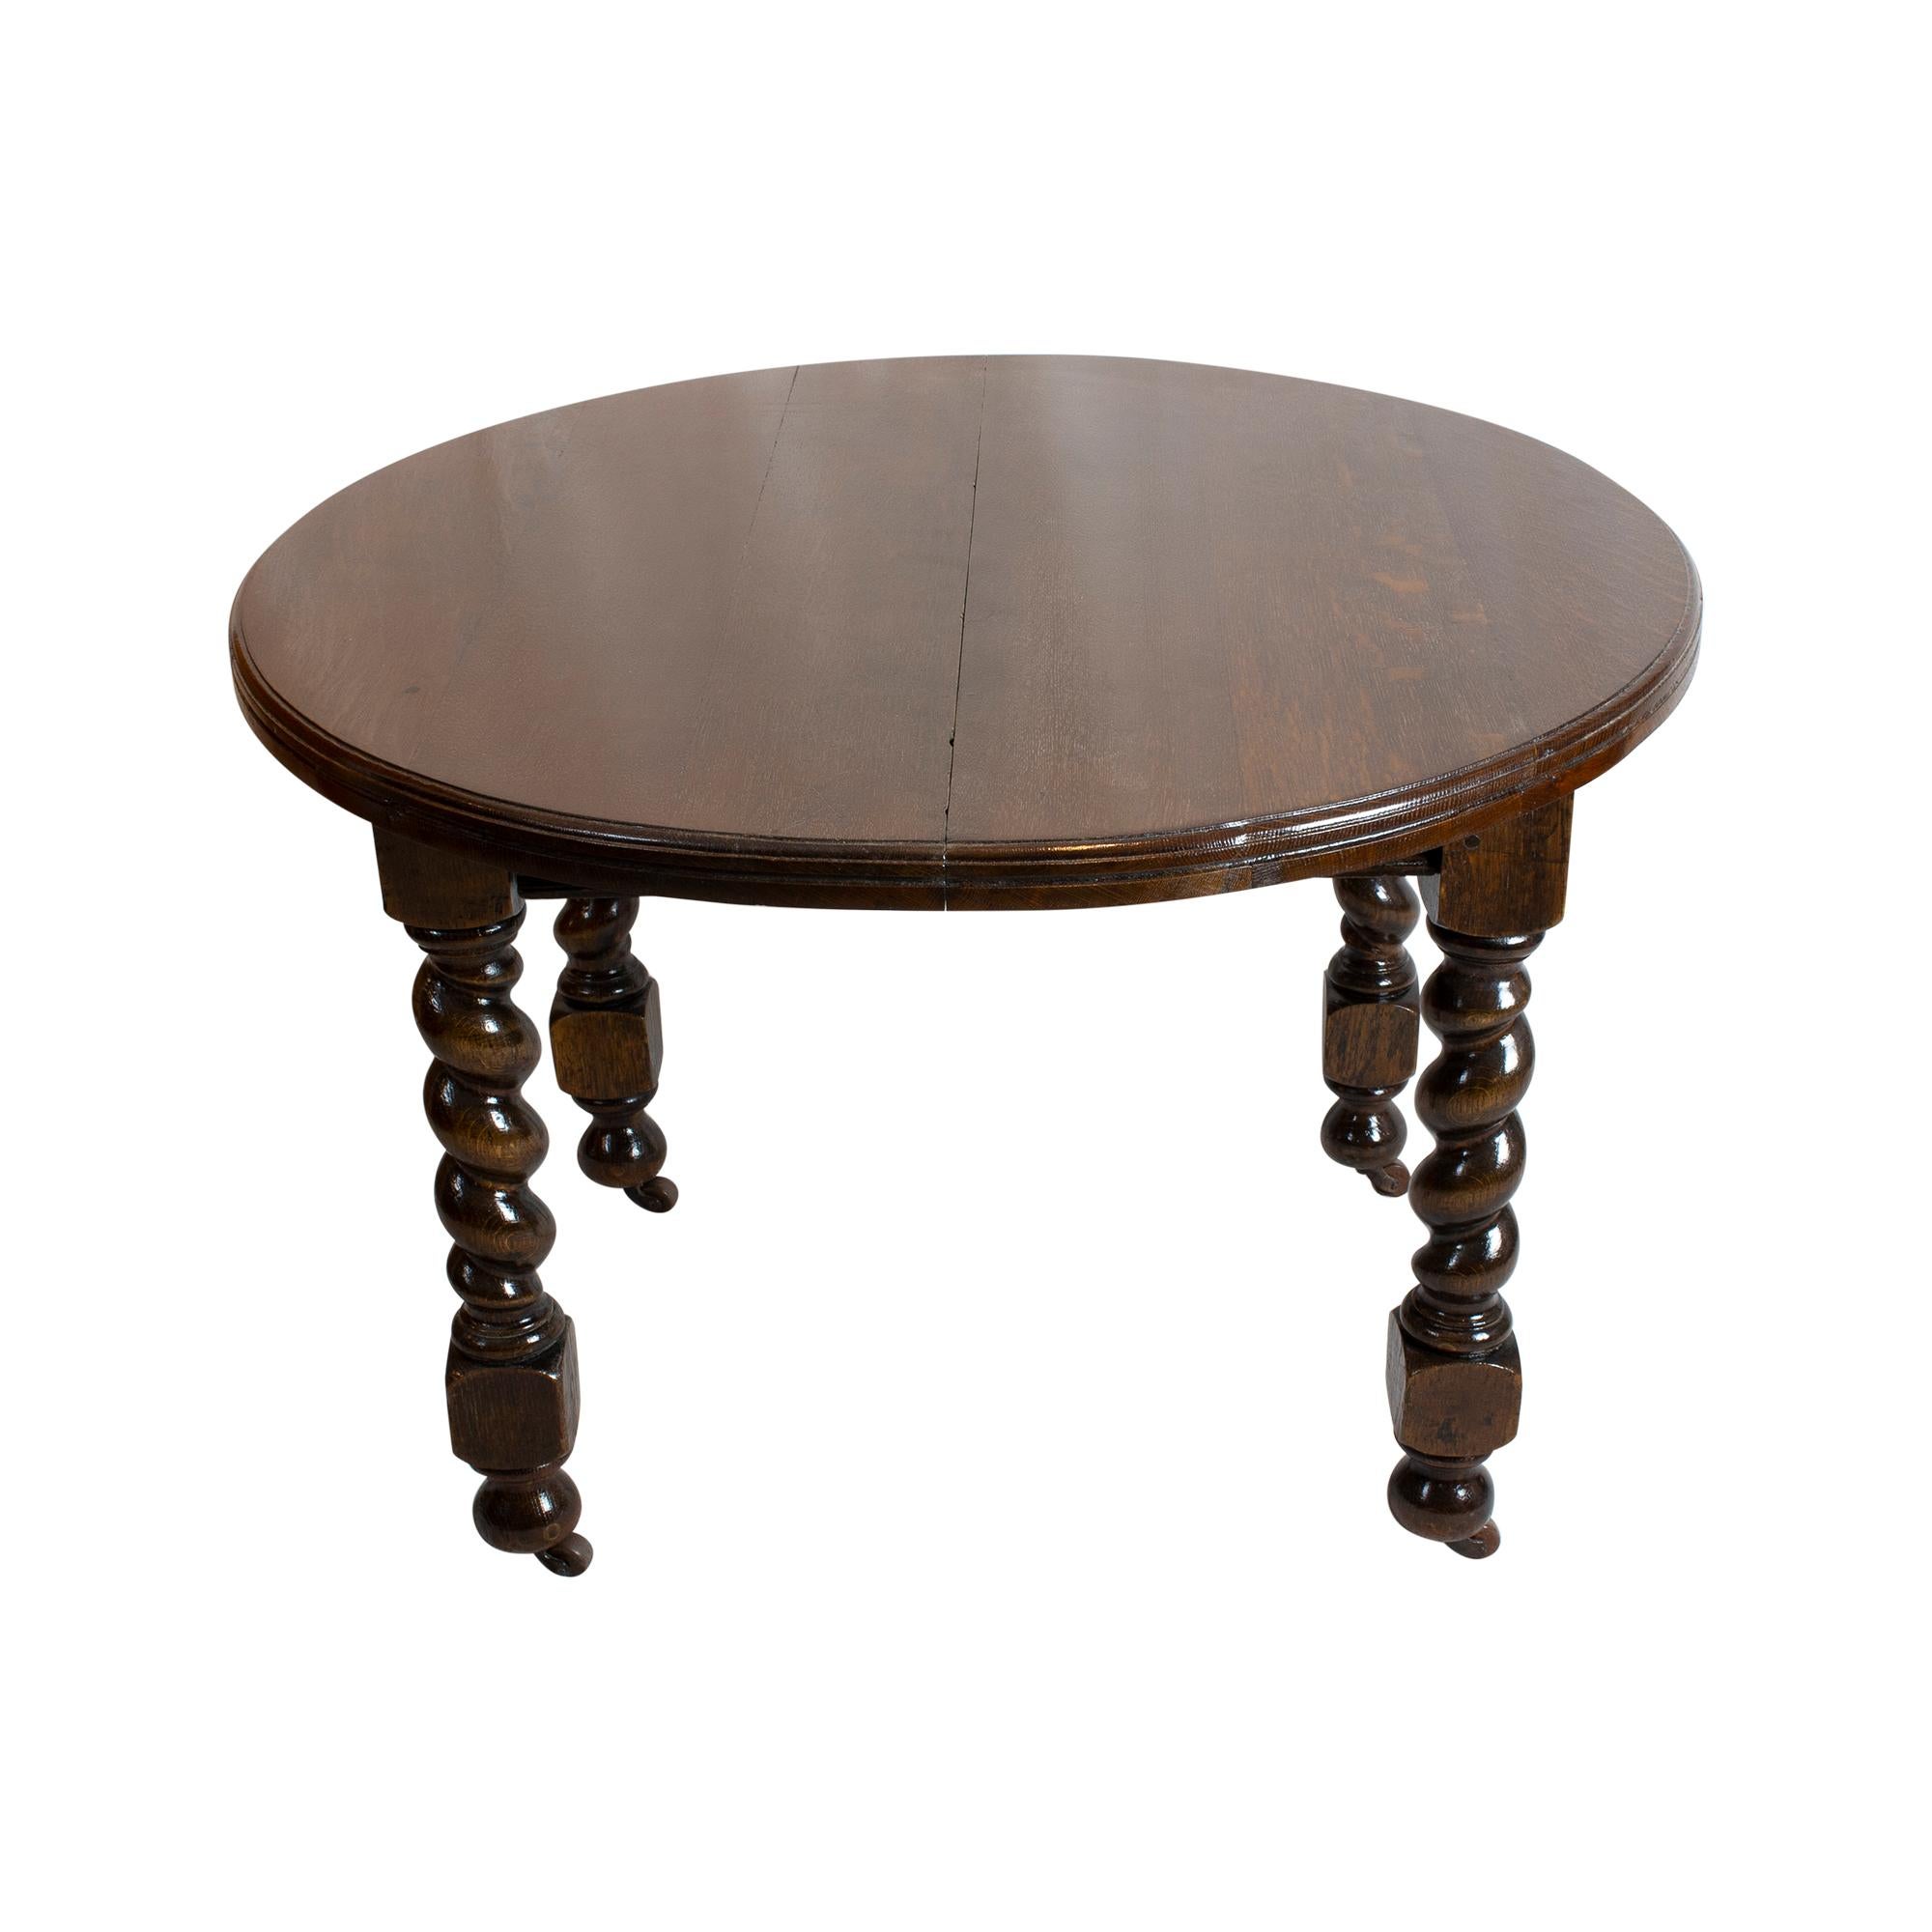 Der Tisch stammt aus England um 1880. Der Tisch war aus Eichenholz gefertigt. Mittels einer Kurbel, die im Lieferumfang enthalten ist, kann der Tisch auseinandergekurbelt und eine Einlegeplatte eingelegt werden, die den Tisch um 43 cm vergrößert.